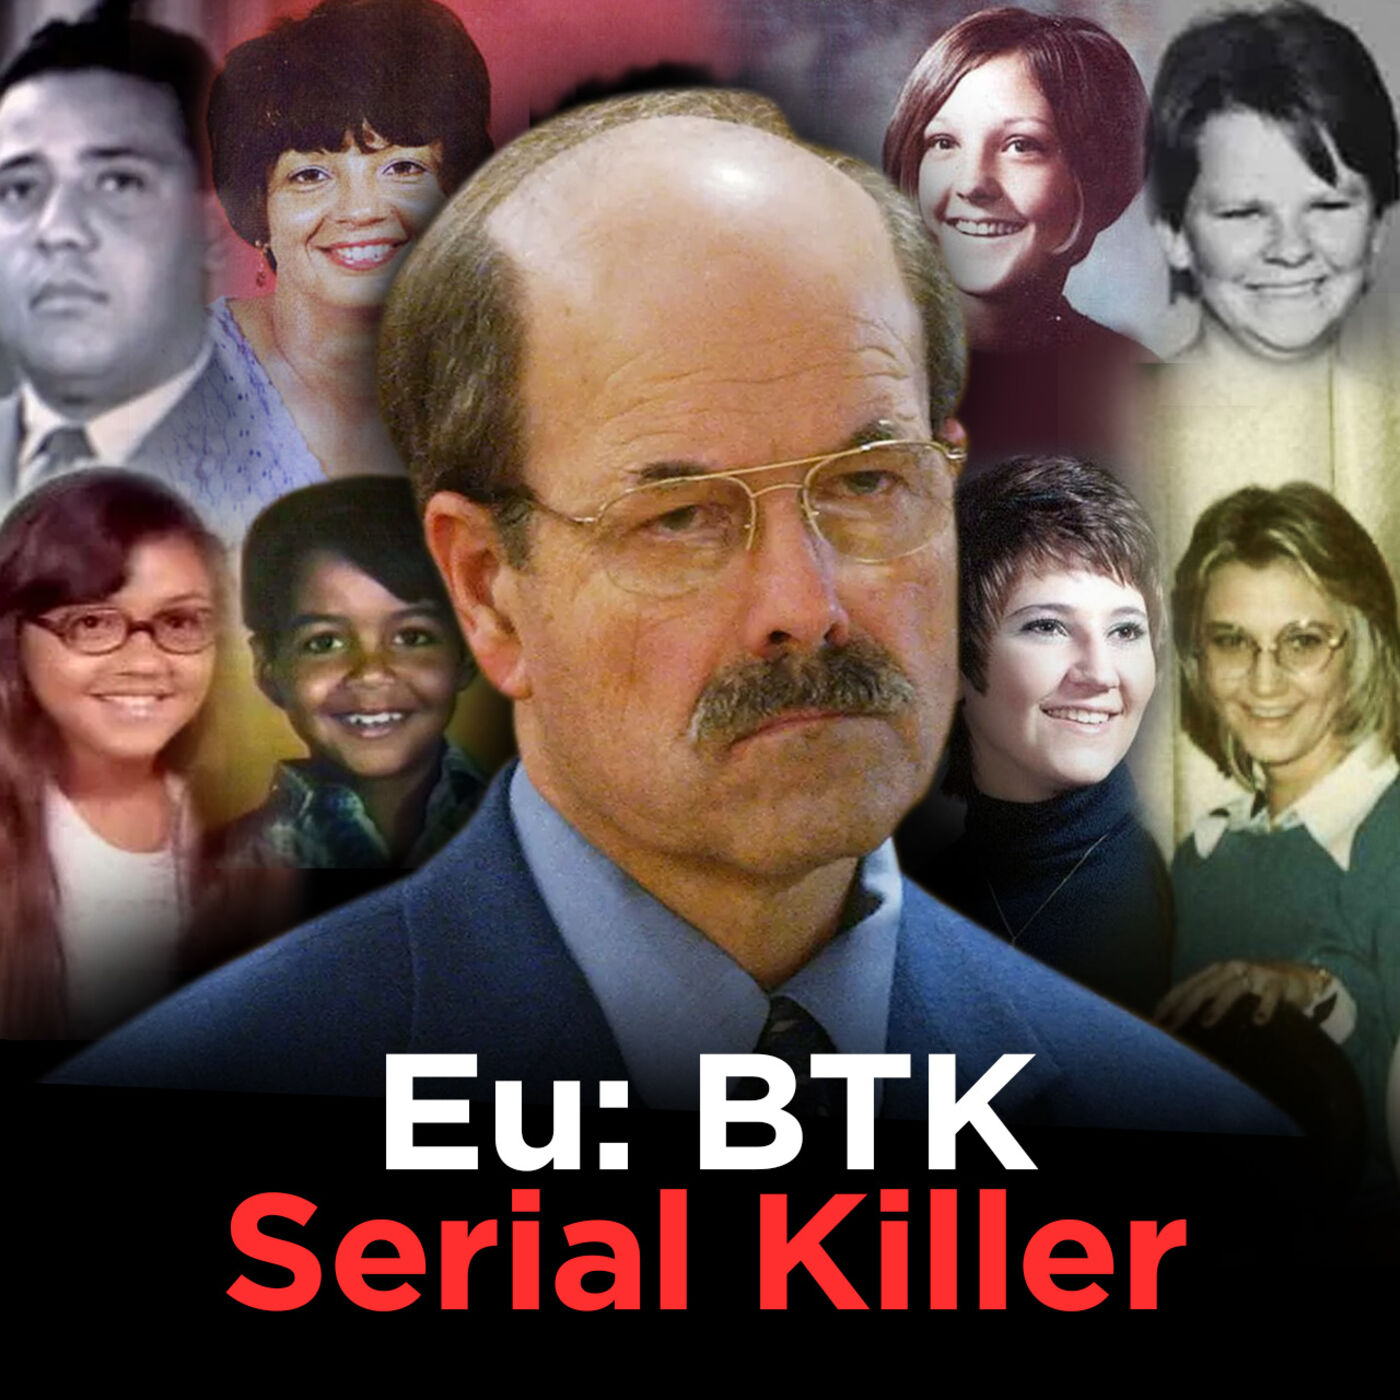 Eu: BTK (As confissões de um Serial Killer) [Ep 01]